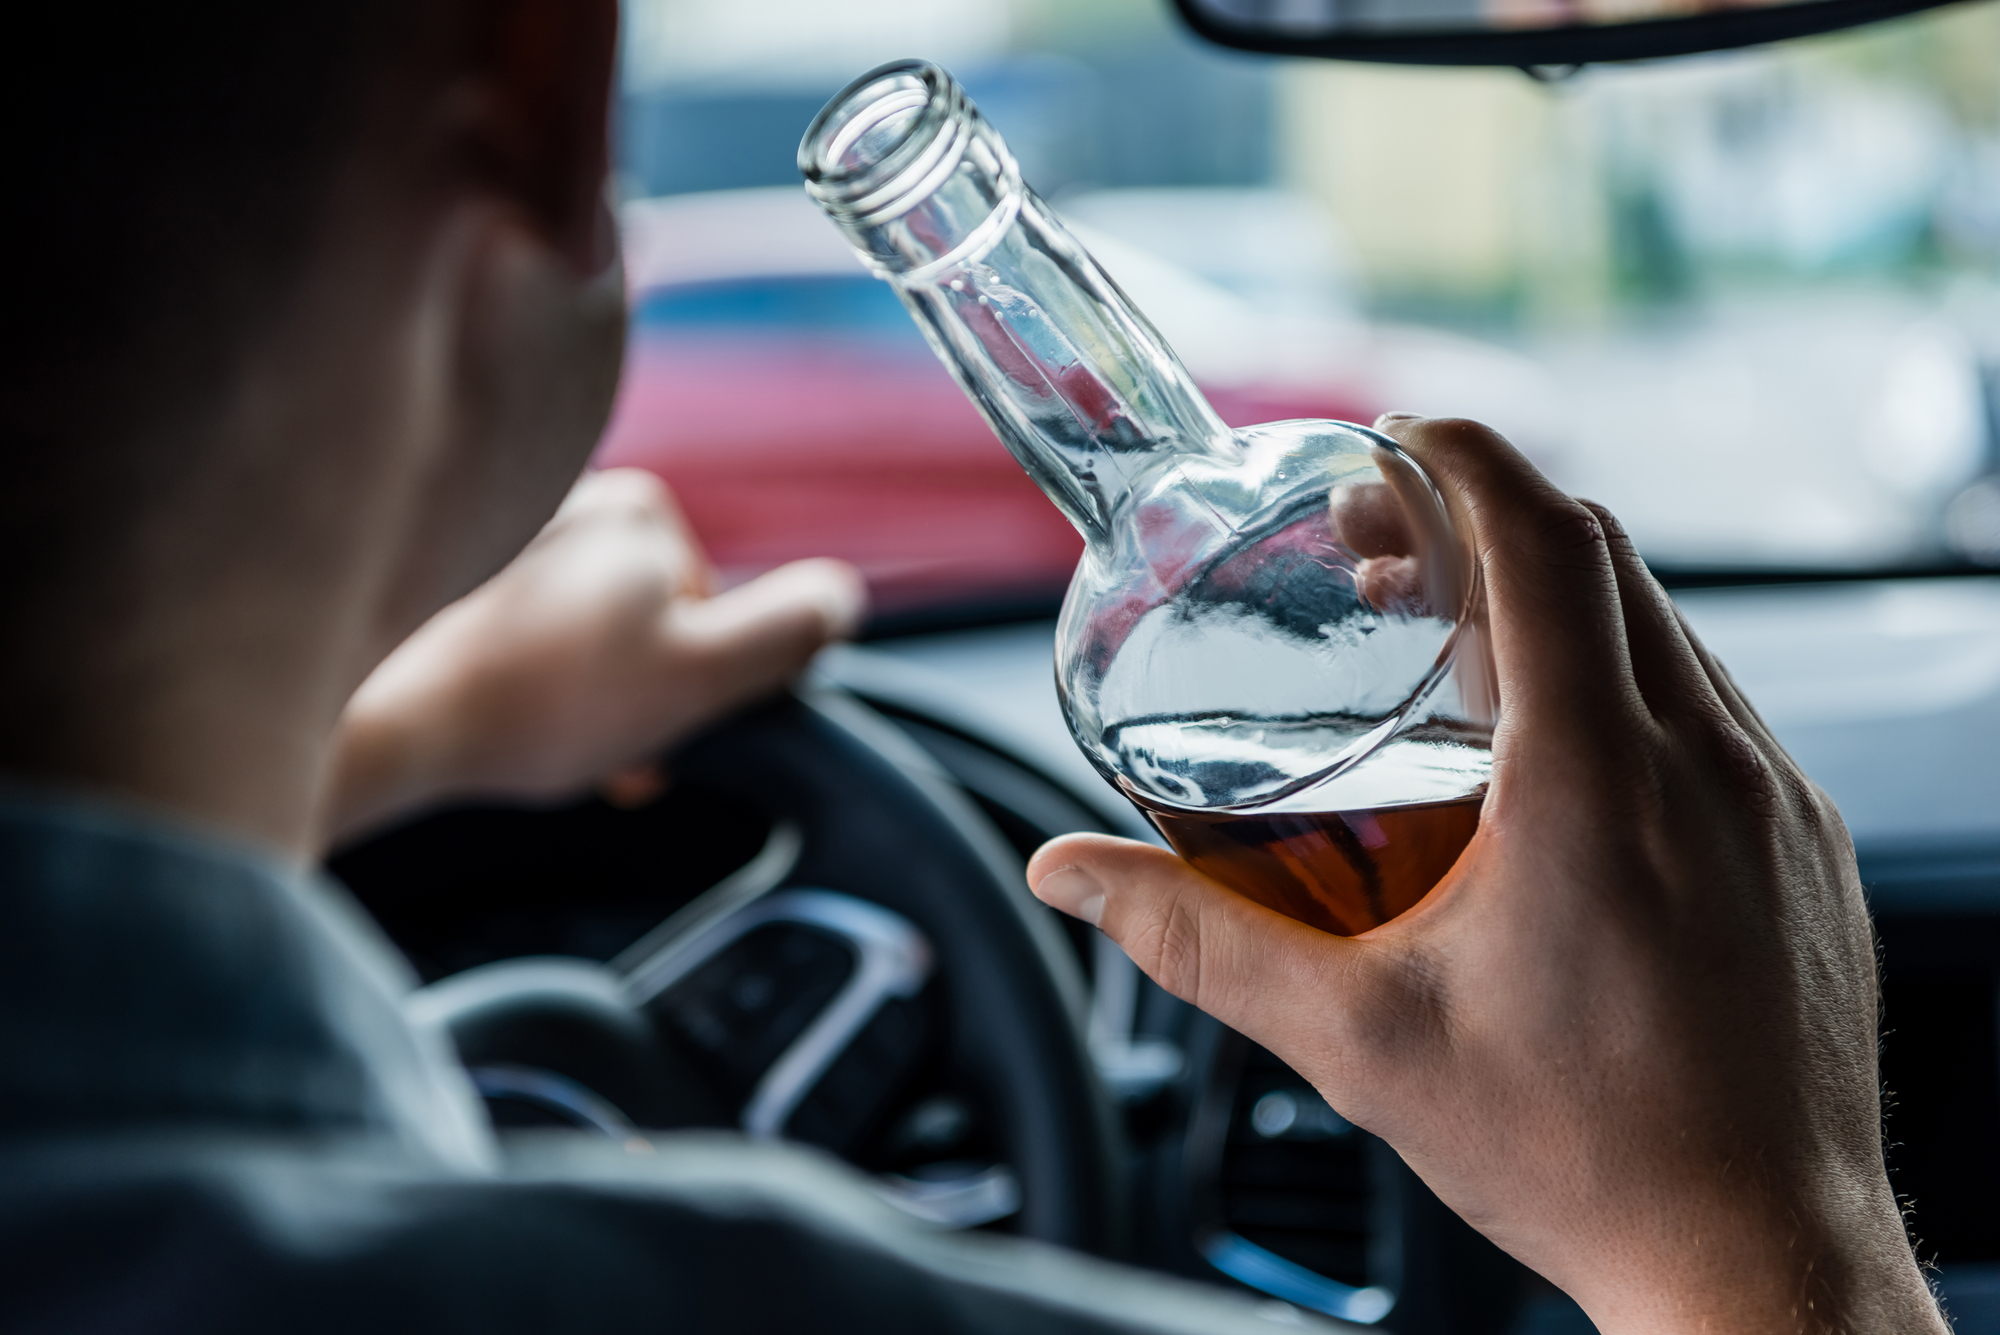 Autobahnpolizei Ahlhorn: Alkoholisierter Pkw-Fahrer fällt durch aggressive Fahrweise auf der Autobahn 1 in Emstek auf